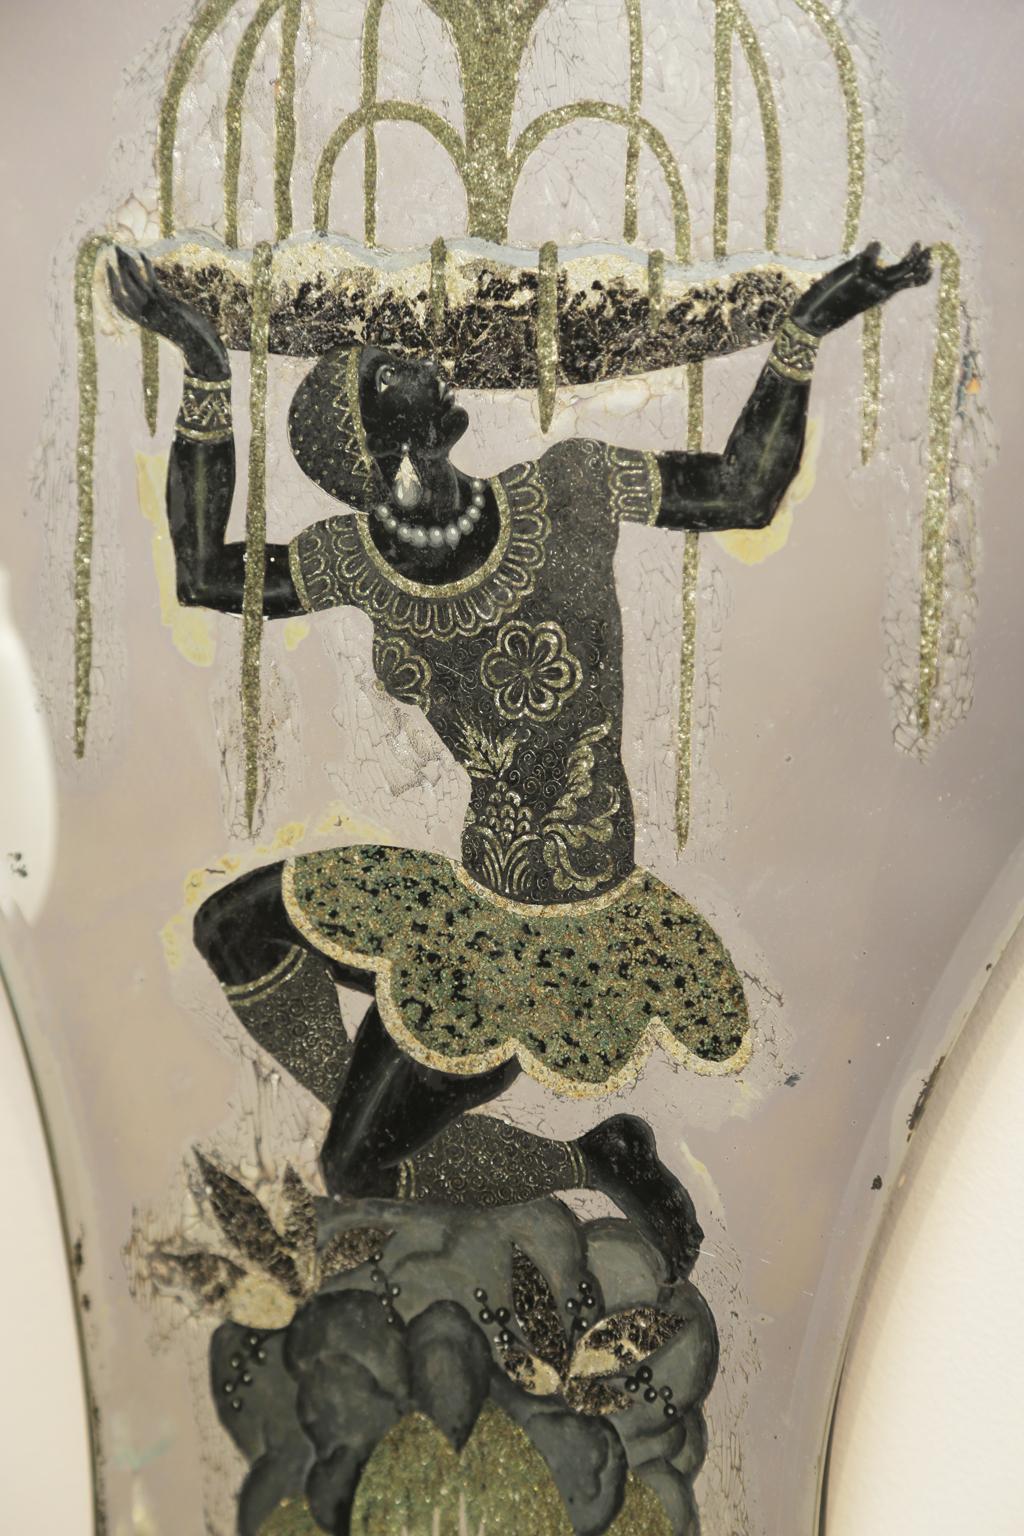 Ein rechtes und ein linkes Paar von Leuchtern, jeder mit einer schildförmigen, verspiegelten Rückwand, rückseitig mit nubischen Figuren bemalt, S-Schnecken-Kerzenarme, aus Messing, verziert mit Pendelkristallen. abgeschlossen mit Palmenakzent unter